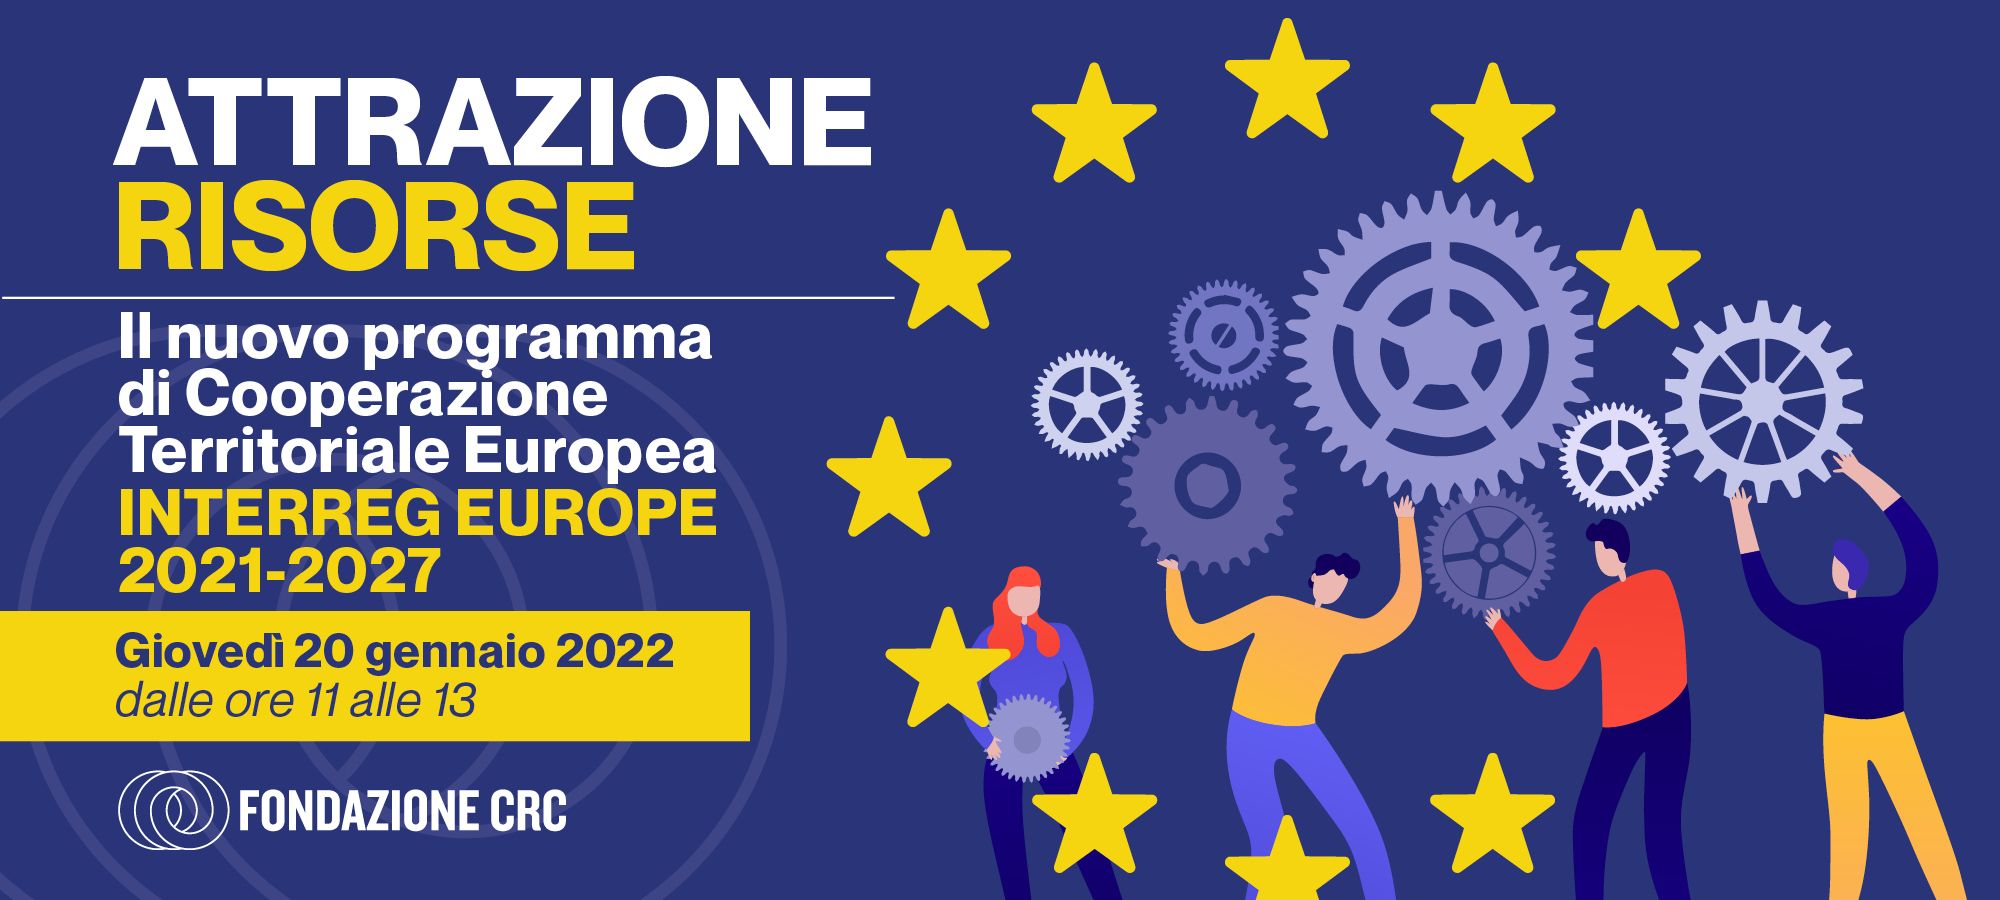 Il nuovo programma di Cooperazione Territoriale Europea INTERREG EUROPE 2021-2027